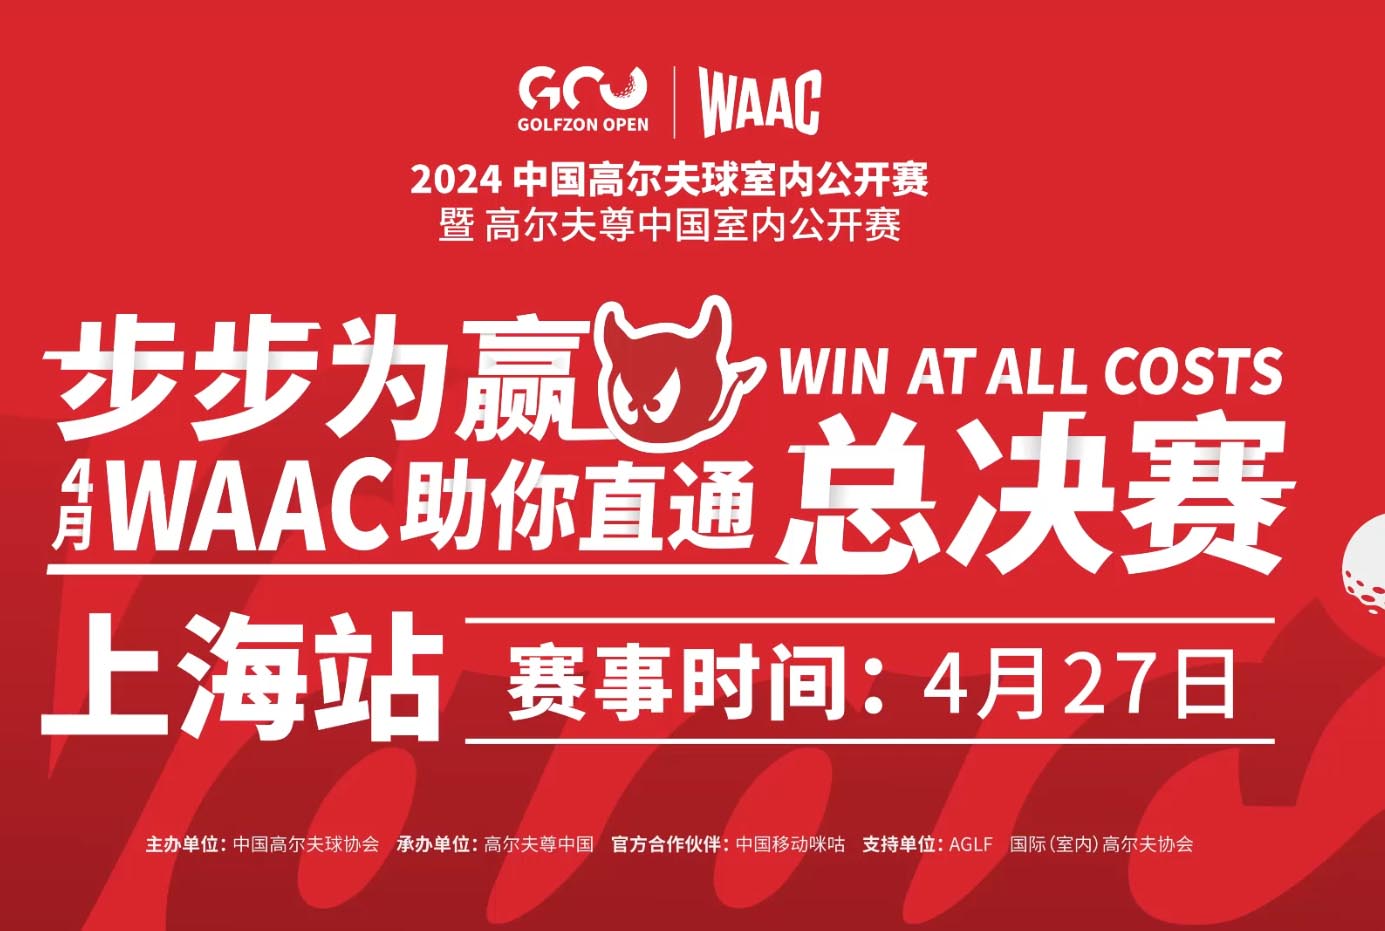 2024高尔夫尊中国室内公开赛 WAAC联名赛 圆满举办